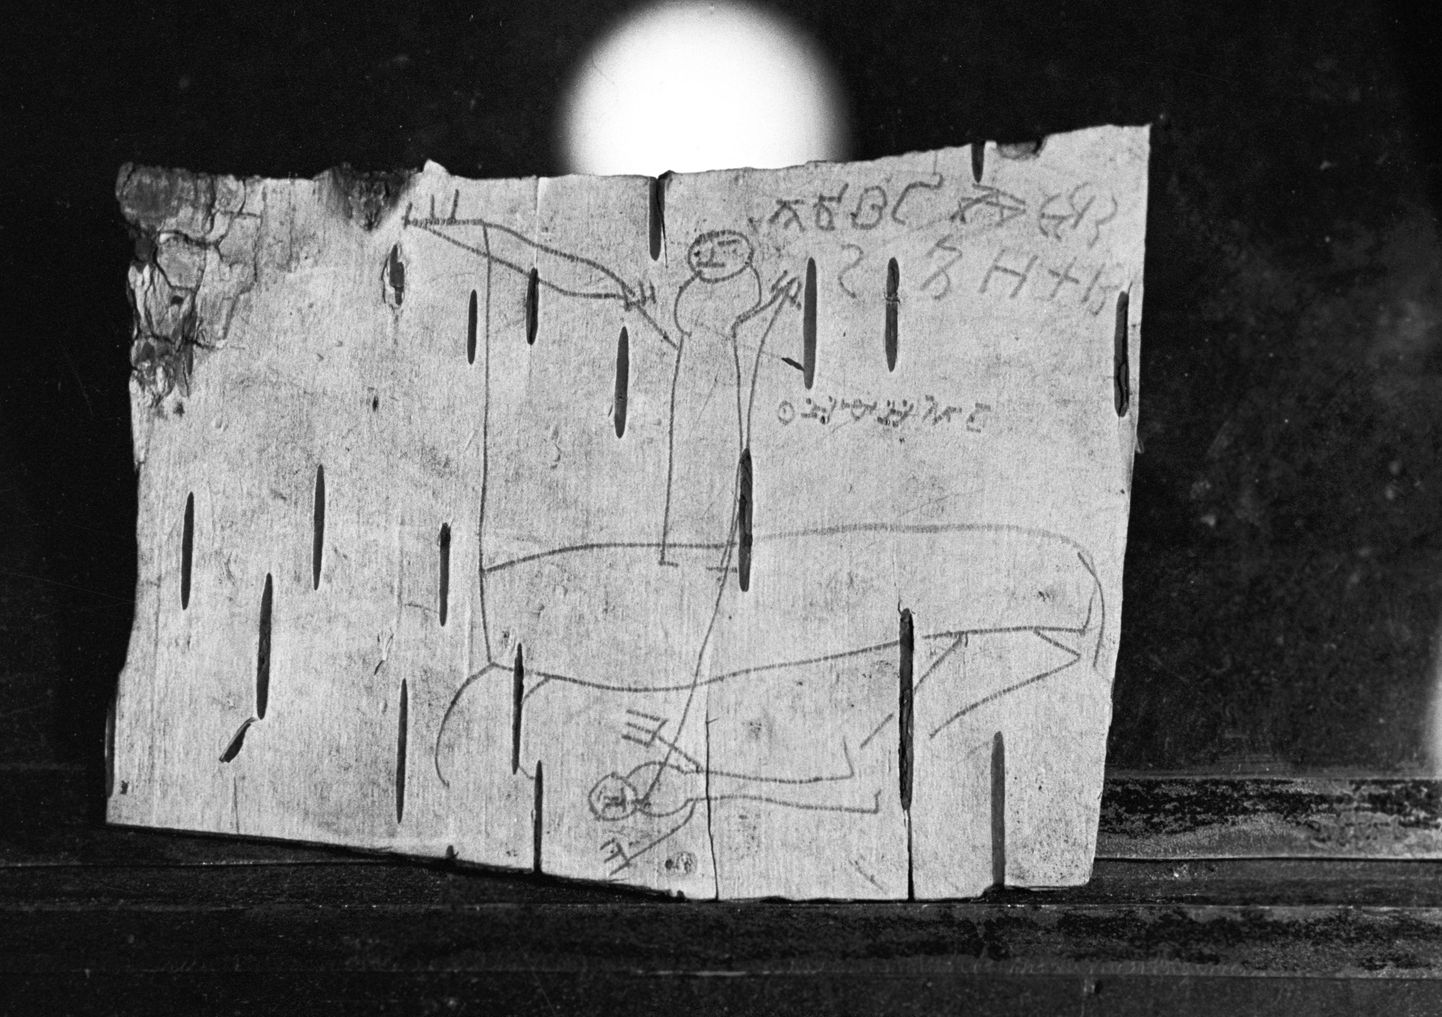 Знаменитая берестяная грамота мальчика Онфима из новгородского раскопа. Иллюстративное фото.